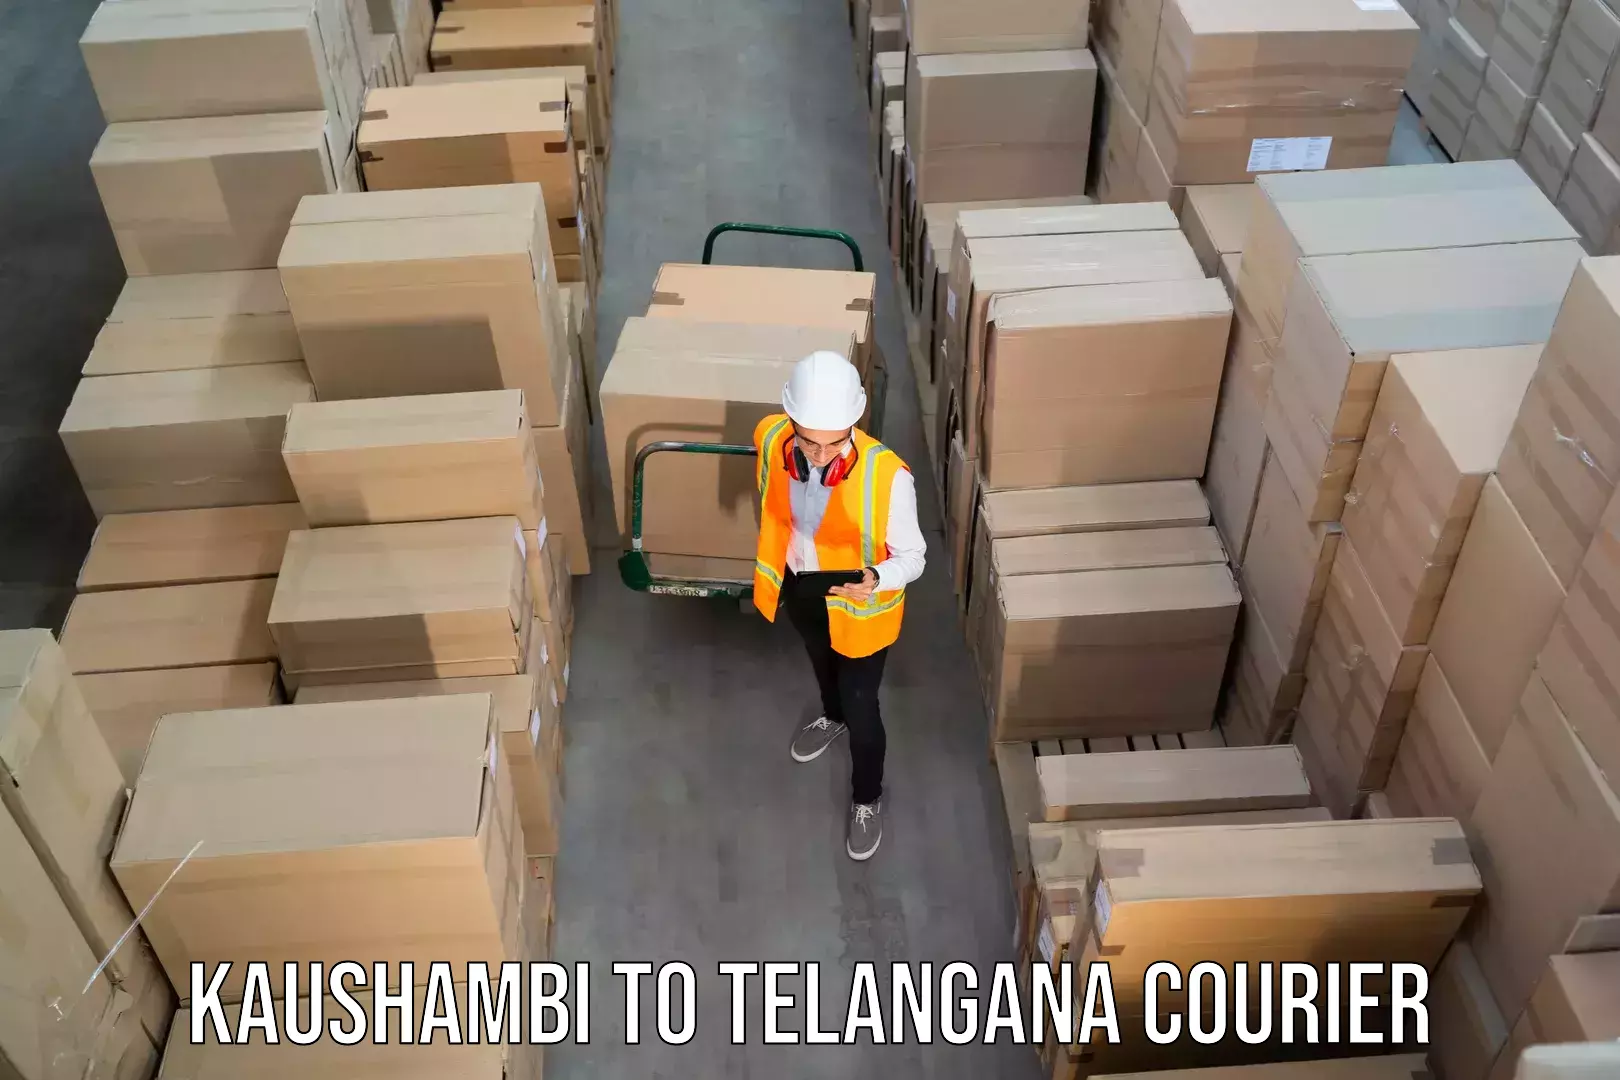 Next-day freight services Kaushambi to Wanaparthy